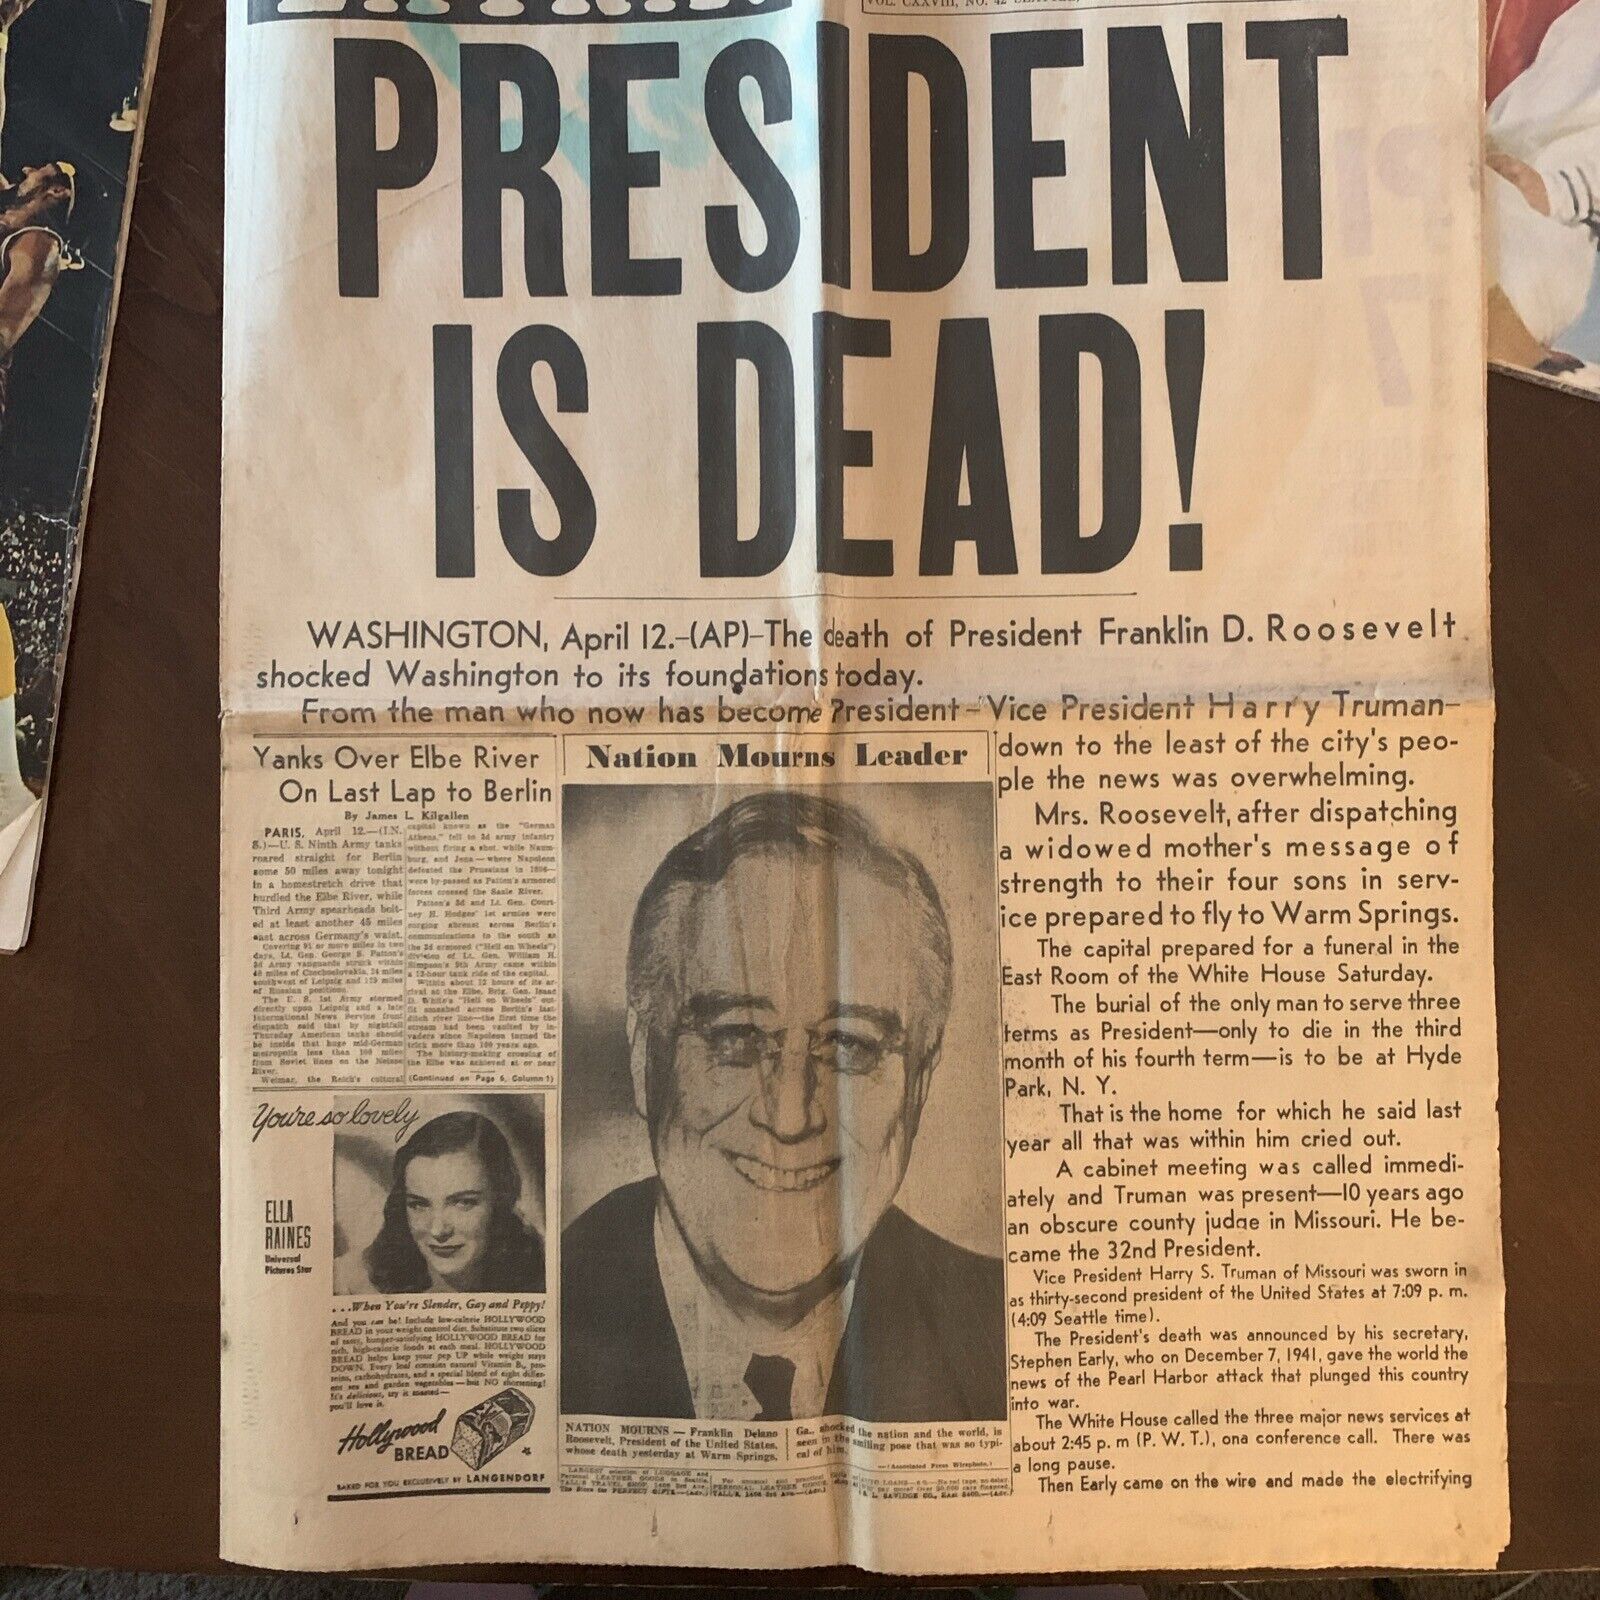 Seattle Post-Intelligencer Friday April 13, 1945 Roosevelt Is Dead Newspaper